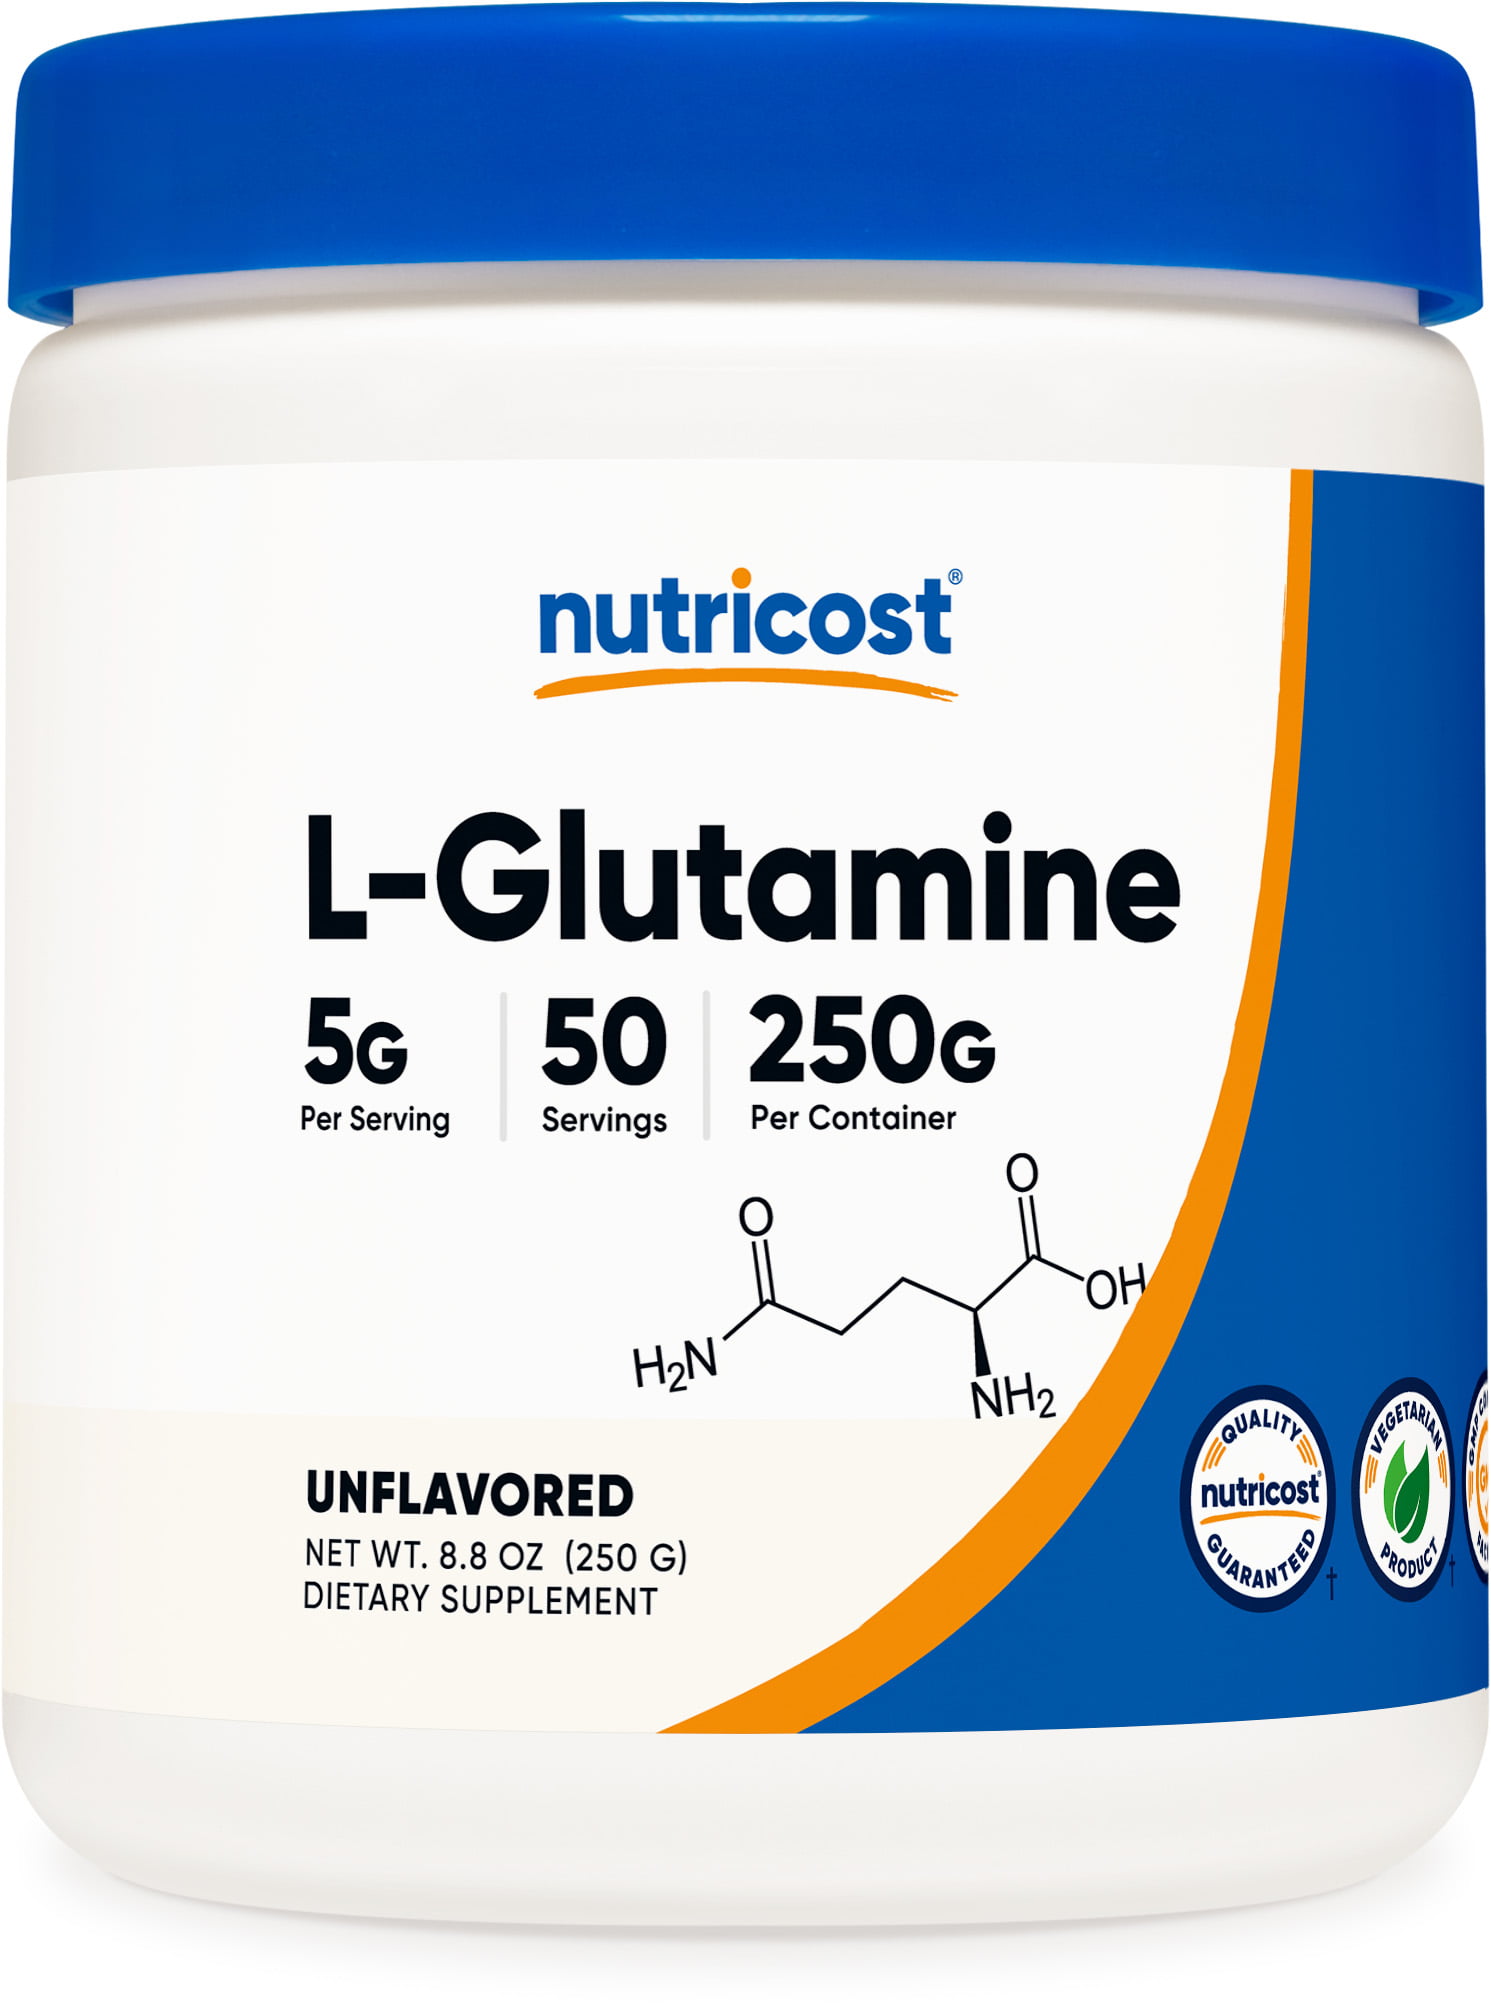 Gluten-free L-Glutamine Powder - 250g